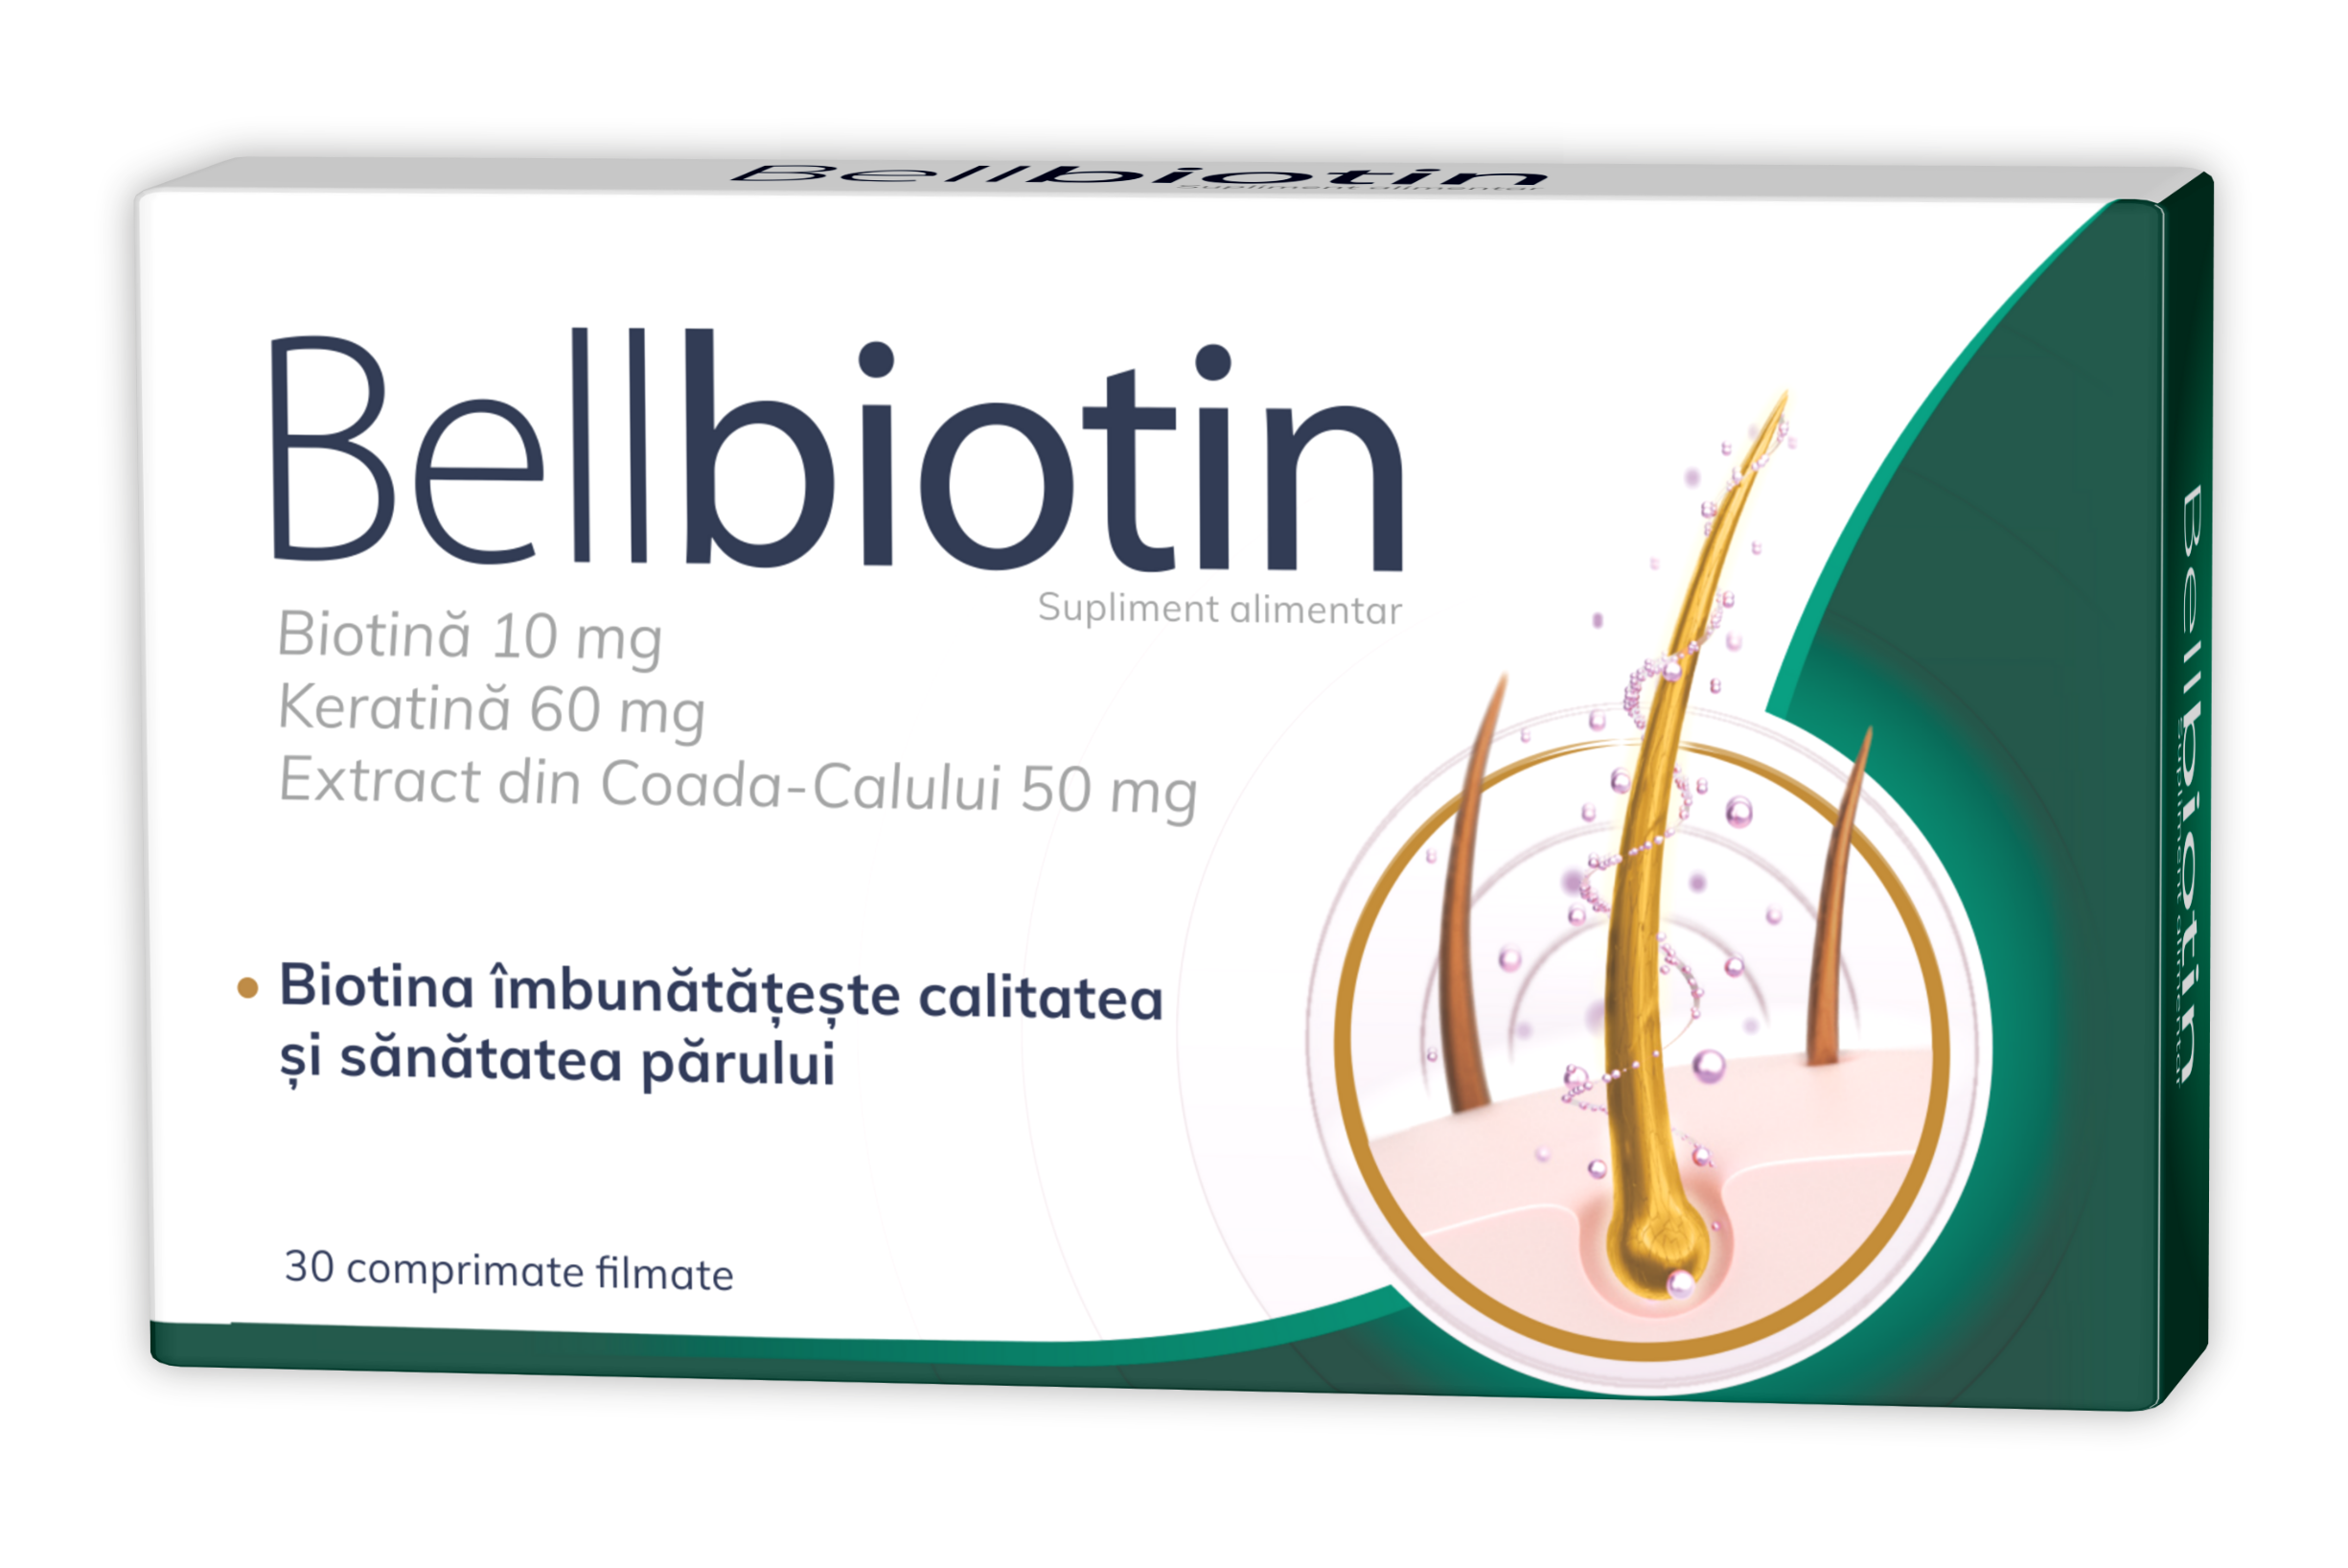 Bellbiotin, secretul părului puternic, frumos și sănătos